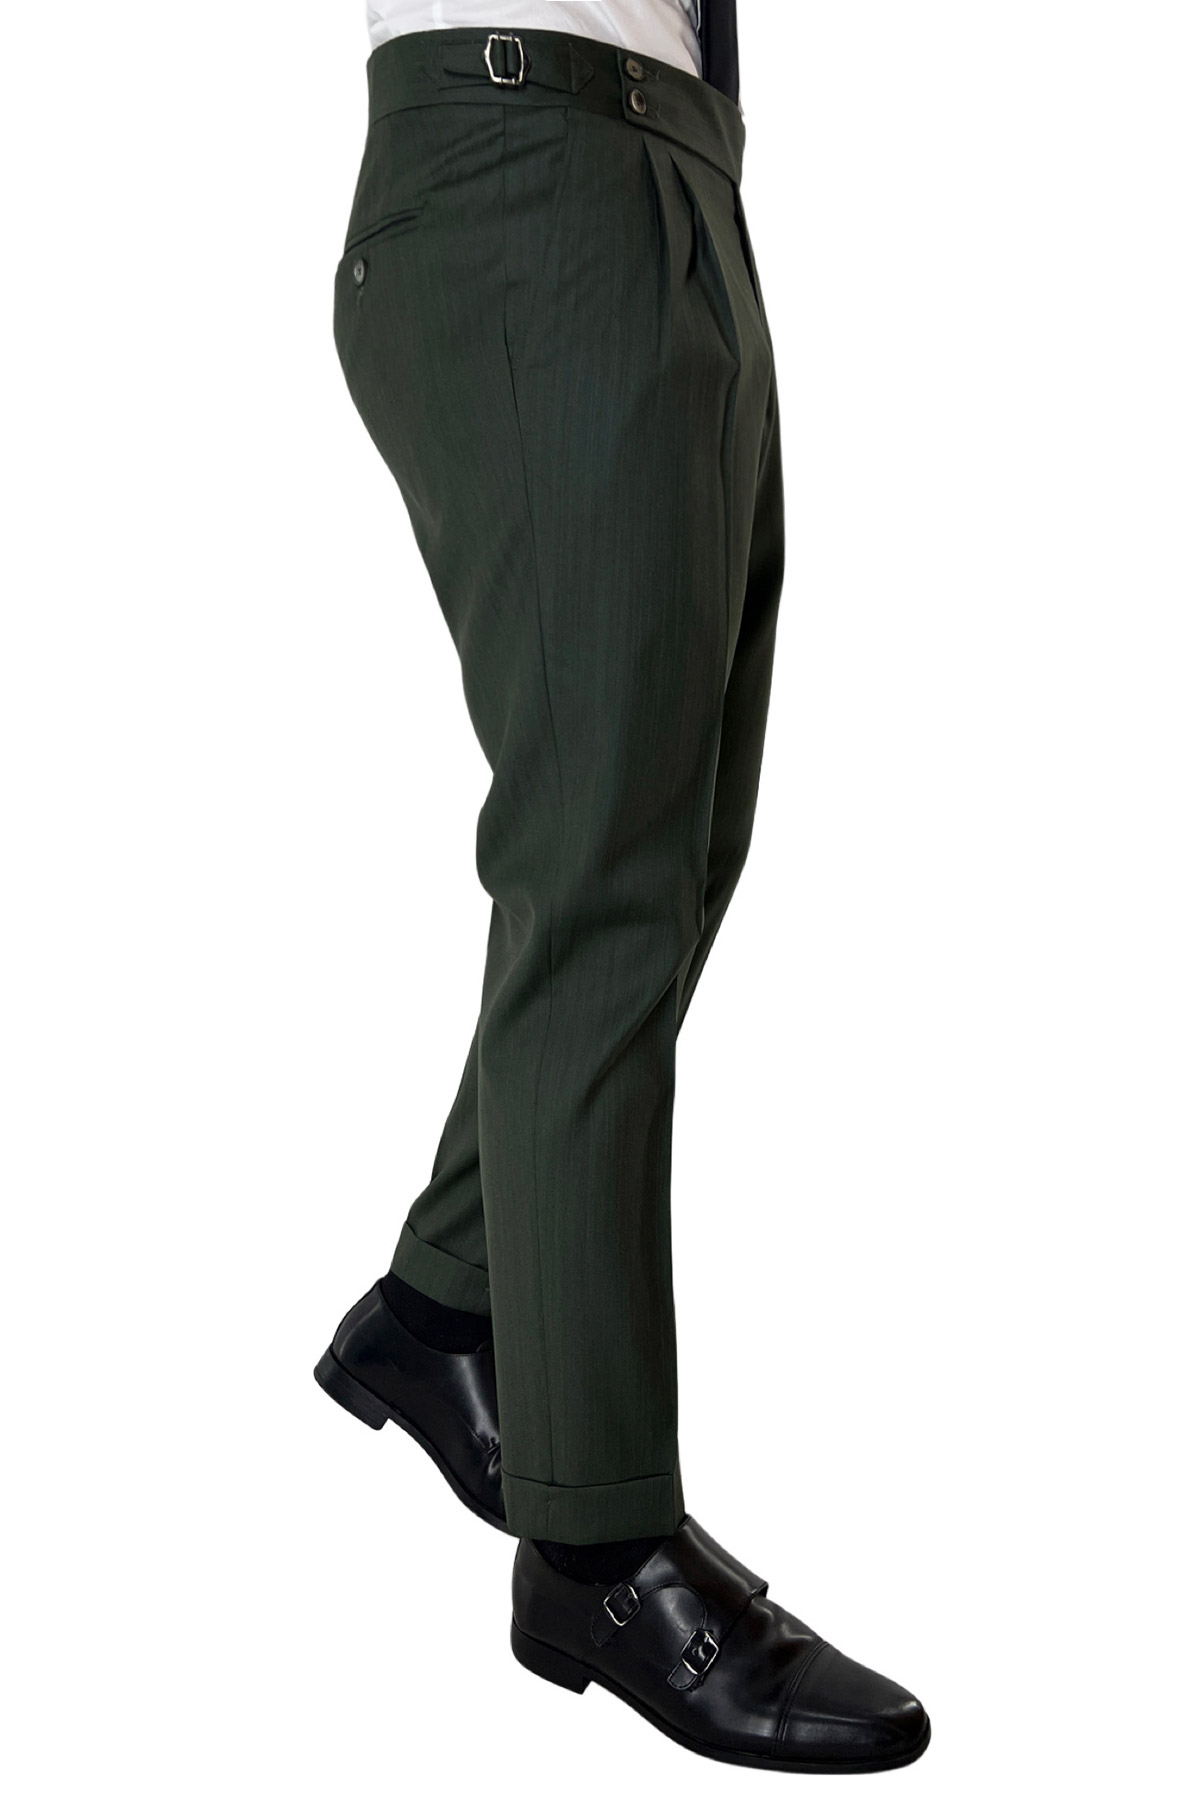 Pantalone uomo verde militare Solaro vita alta doppia pinces in fresco lana e seta Vitale Barberis Canonico